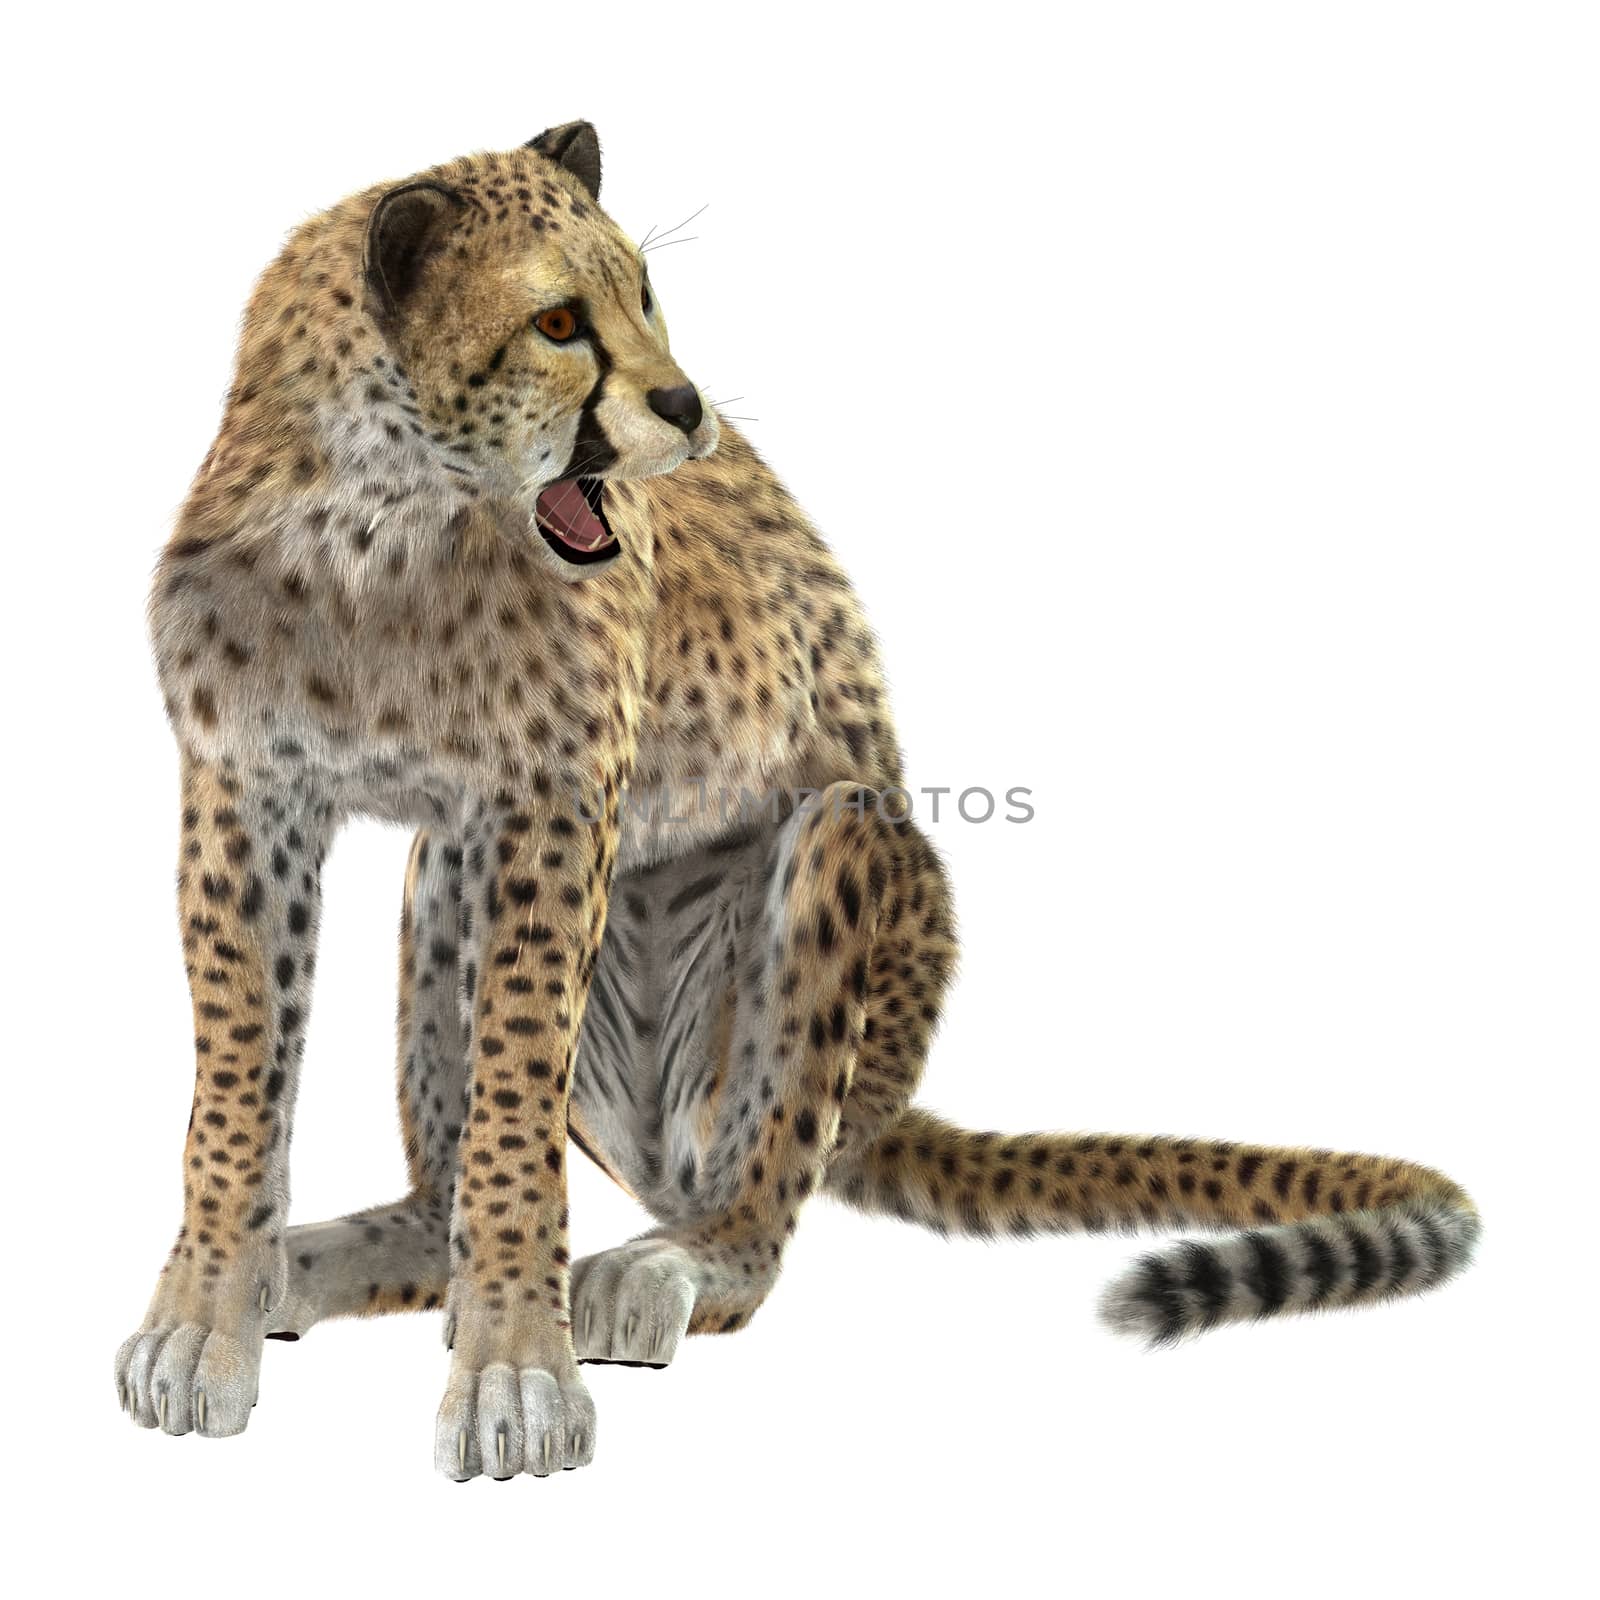 Cheetah by Vac